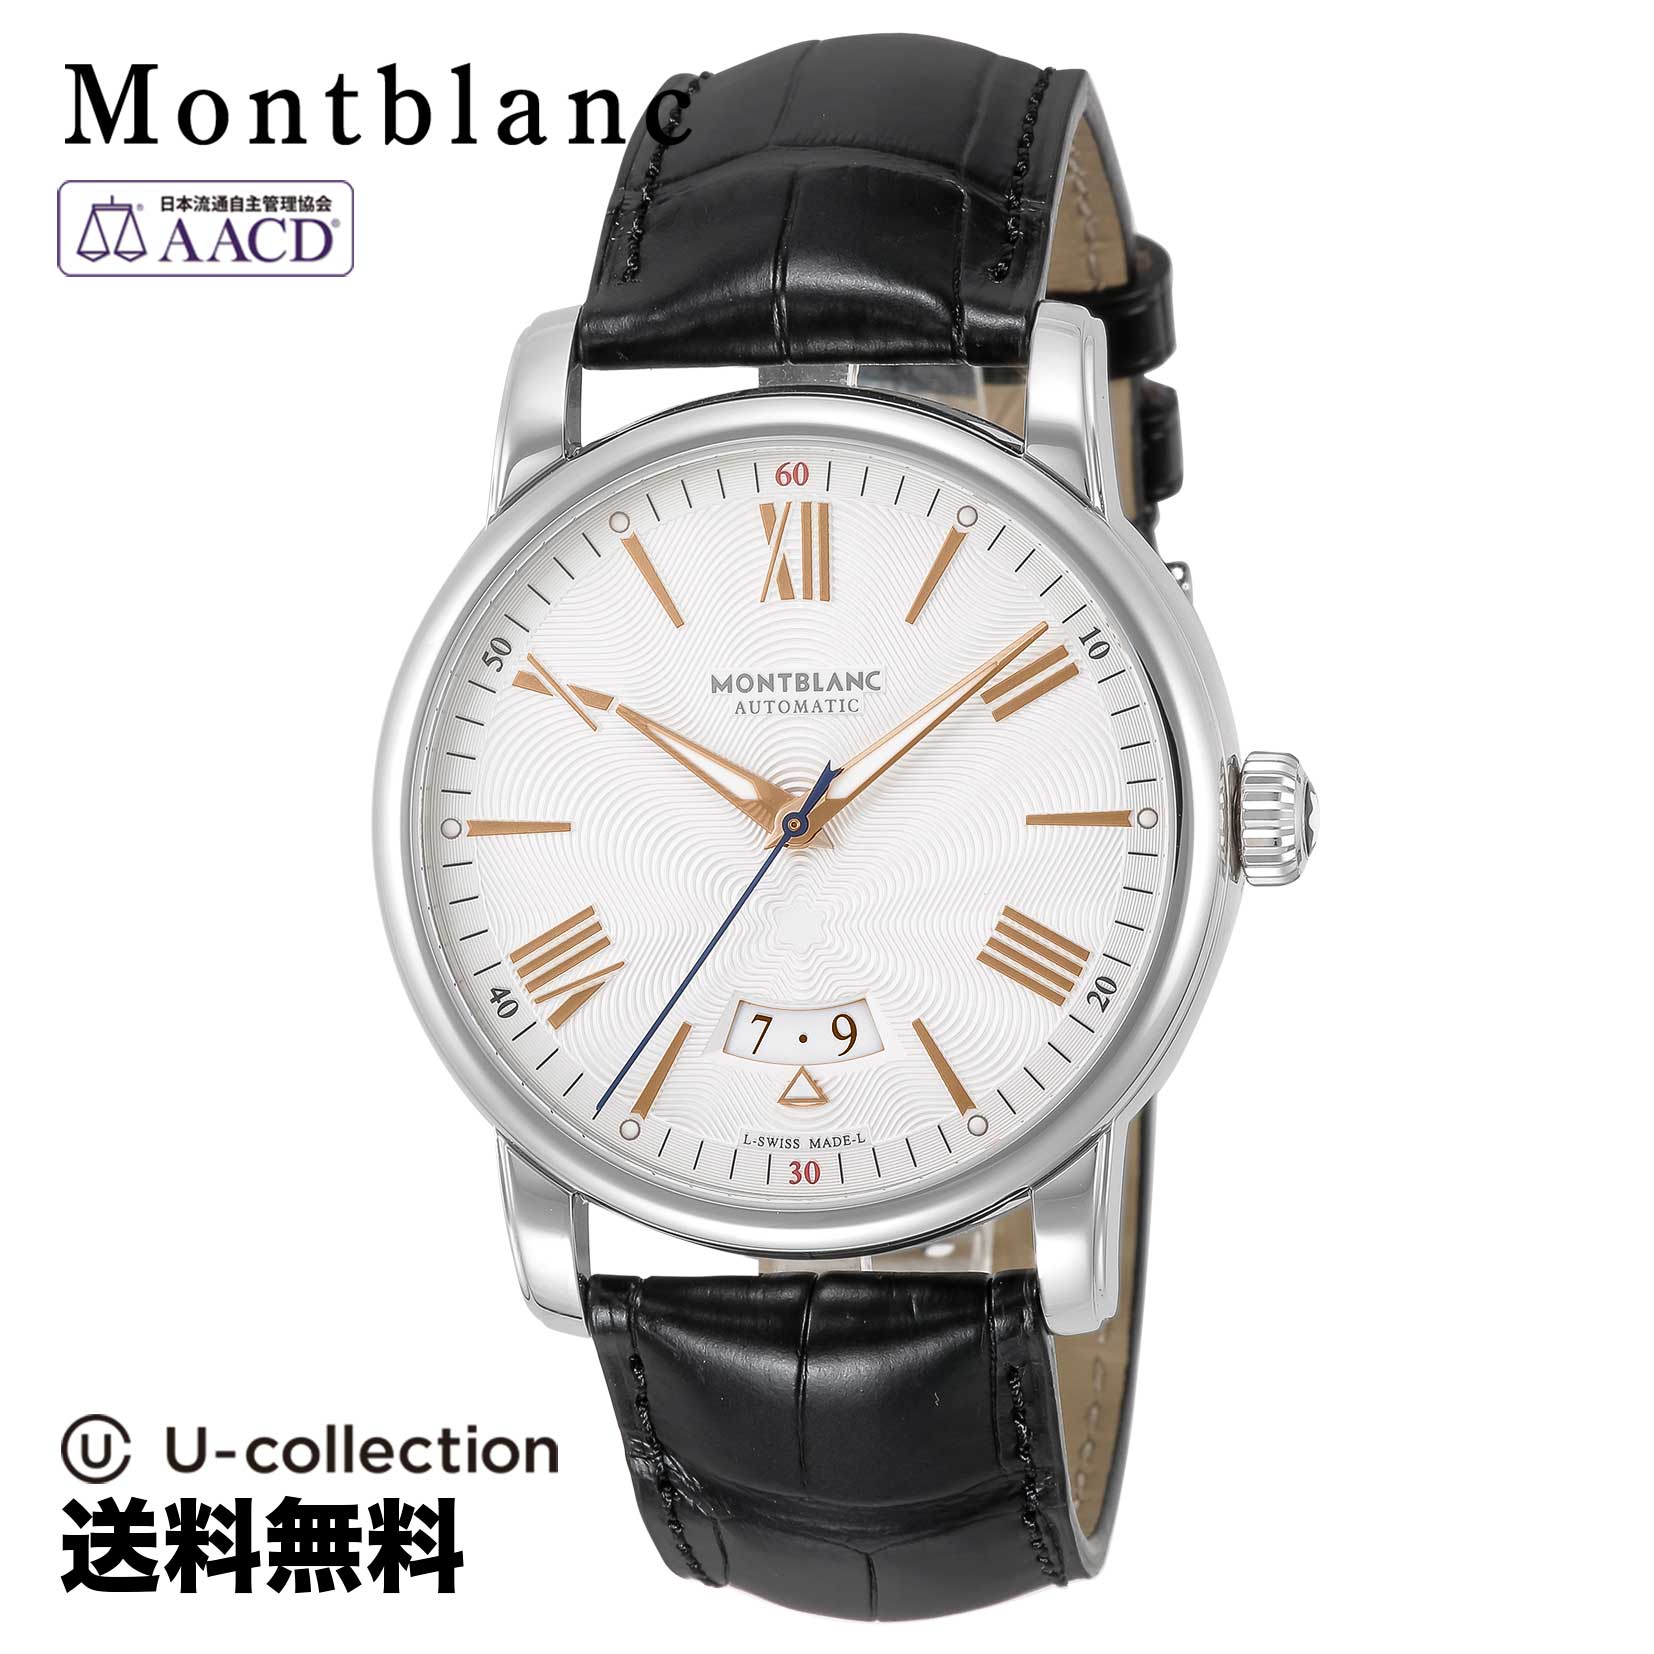 Mont Blanc【腕時計】 Montblanc(モンブラン) 4810 / メンズ シルバー 自動巻 114841 時計 ブランド